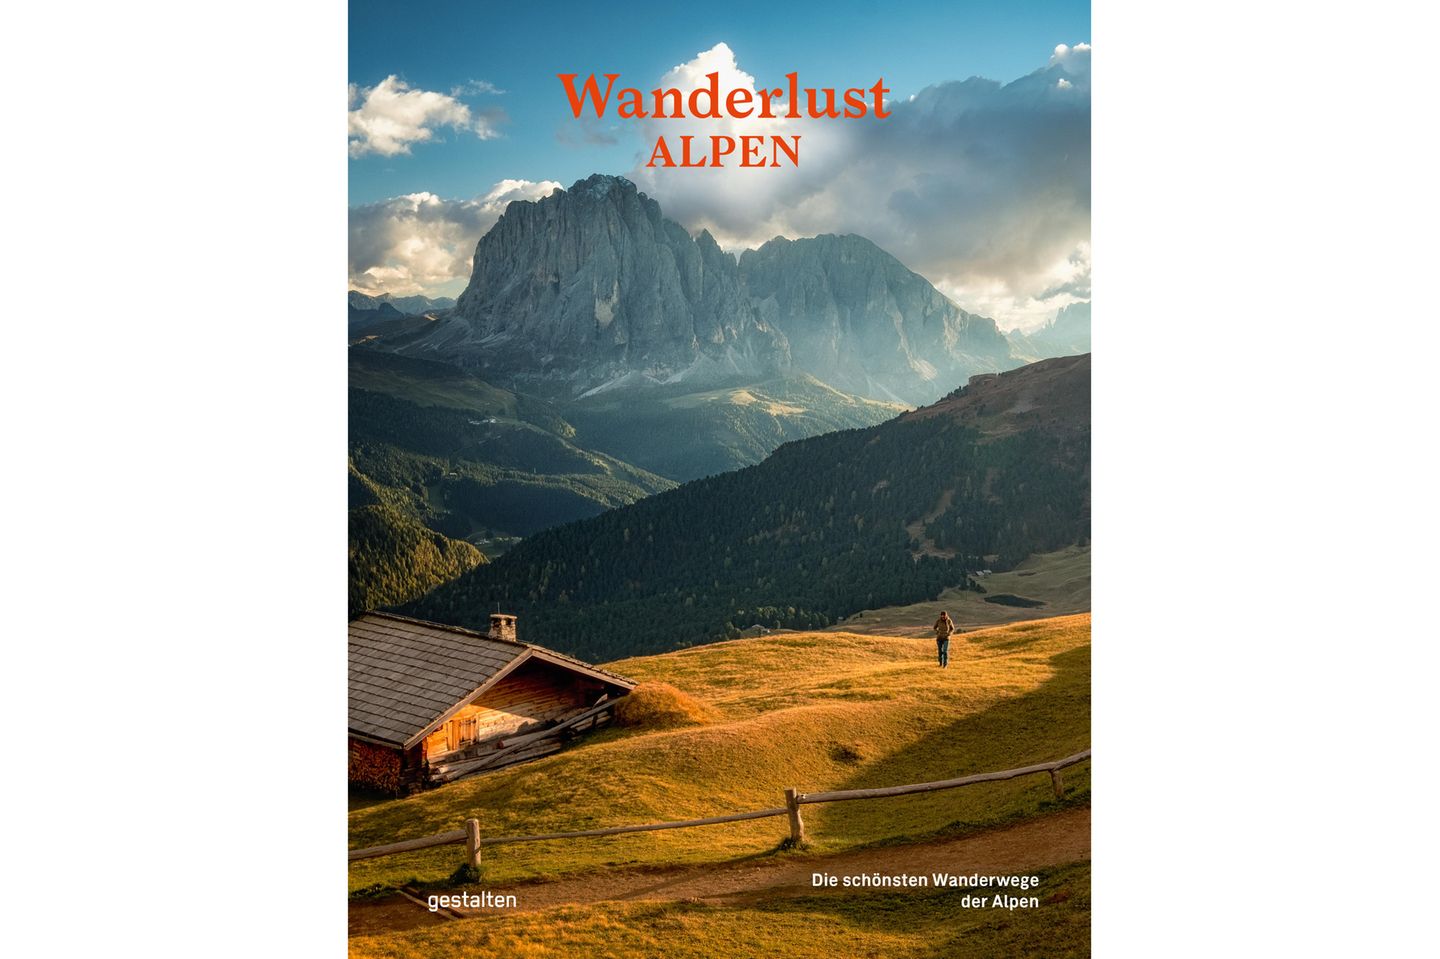 https://www.amazon.de/Wanderlust-Alpen-Die-schönsten-Wanderwege/dp/3967040224/ref=asc_df_3967040224/